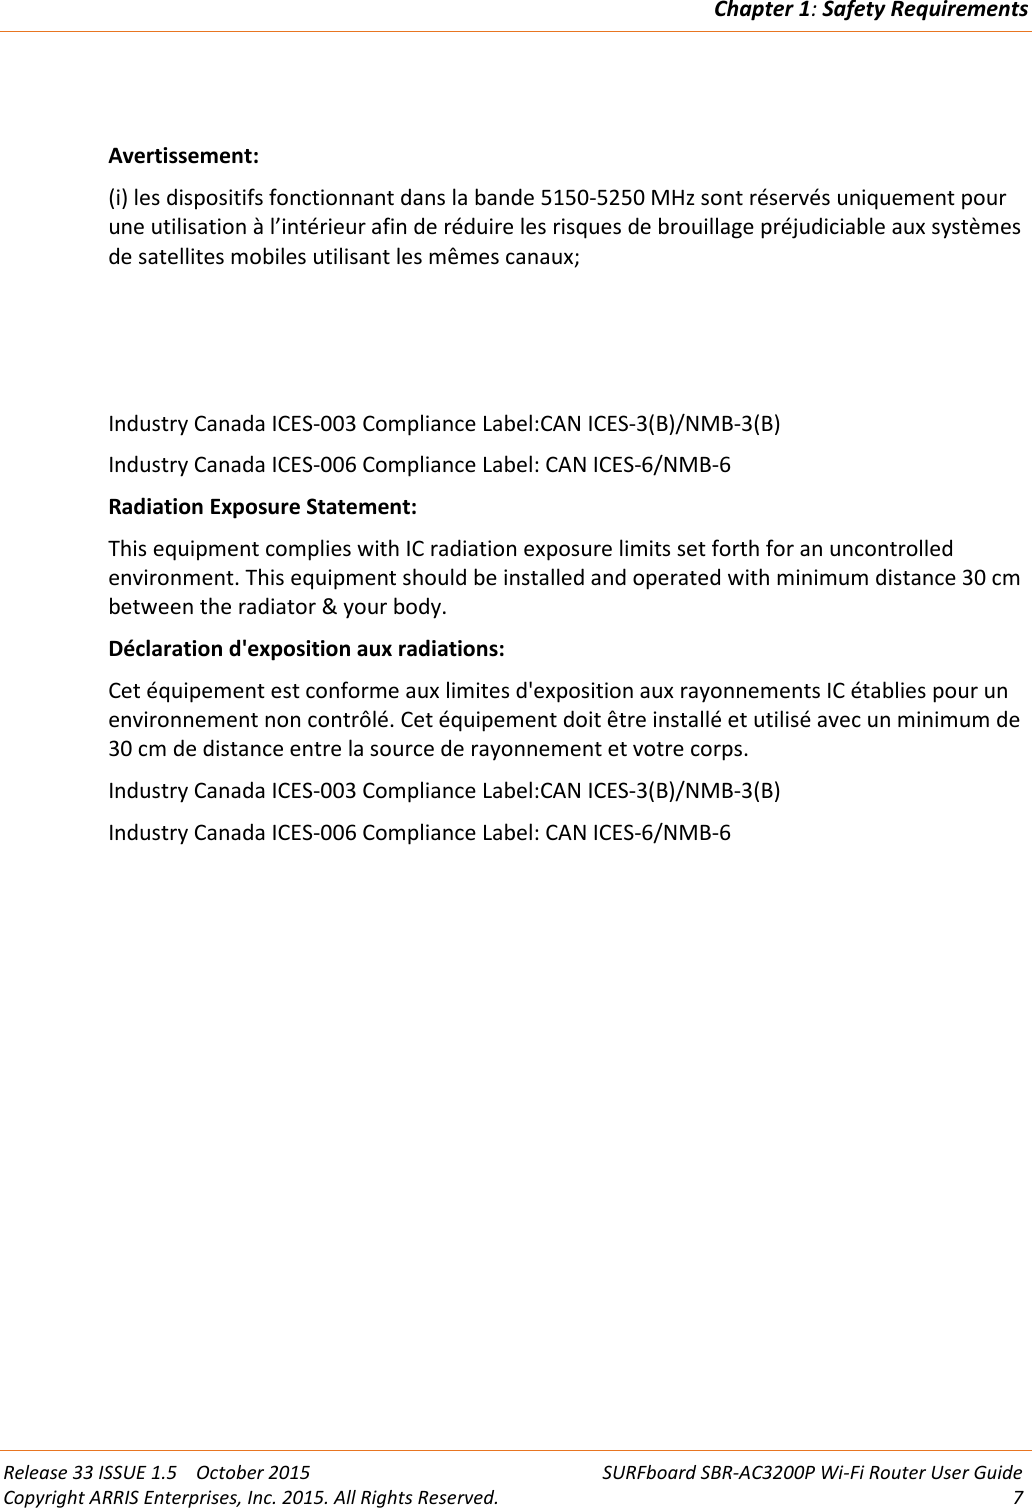 Chapter 1:Safety RequirementsRelease 33 ISSUE 1.5 October 2015 SURFboard SBR-AC3200P Wi-Fi Router User GuideCopyright ARRIS Enterprises, Inc. 2015. All Rights Reserved. 7Avertissement:(i) les dispositifs fonctionnant dans la bande 5150-5250 MHz sont réservés uniquement pourune utilisation à l’intérieur afin de réduire les risques de brouillage préjudiciable aux systèmesde satellites mobiles utilisant les mêmes canaux;Industry Canada ICES-003 Compliance Label:CAN ICES-3(B)/NMB-3(B)Industry Canada ICES-006 Compliance Label: CAN ICES-6/NMB-6Radiation Exposure Statement:This equipment complies with IC radiation exposure limits set forth for an uncontrolledenvironment. This equipment should be installed and operated with minimum distance 30 cmbetween the radiator &amp; your body.Déclaration d&apos;exposition aux radiations:Cet équipement est conforme aux limites d&apos;exposition aux rayonnements IC établies pour unenvironnement non contrôlé. Cet équipement doit être installé et utilisé avec un minimum de30 cm de distance entre la source de rayonnement et votre corps.Industry Canada ICES-003 Compliance Label:CAN ICES-3(B)/NMB-3(B)Industry Canada ICES-006 Compliance Label: CAN ICES-6/NMB-6